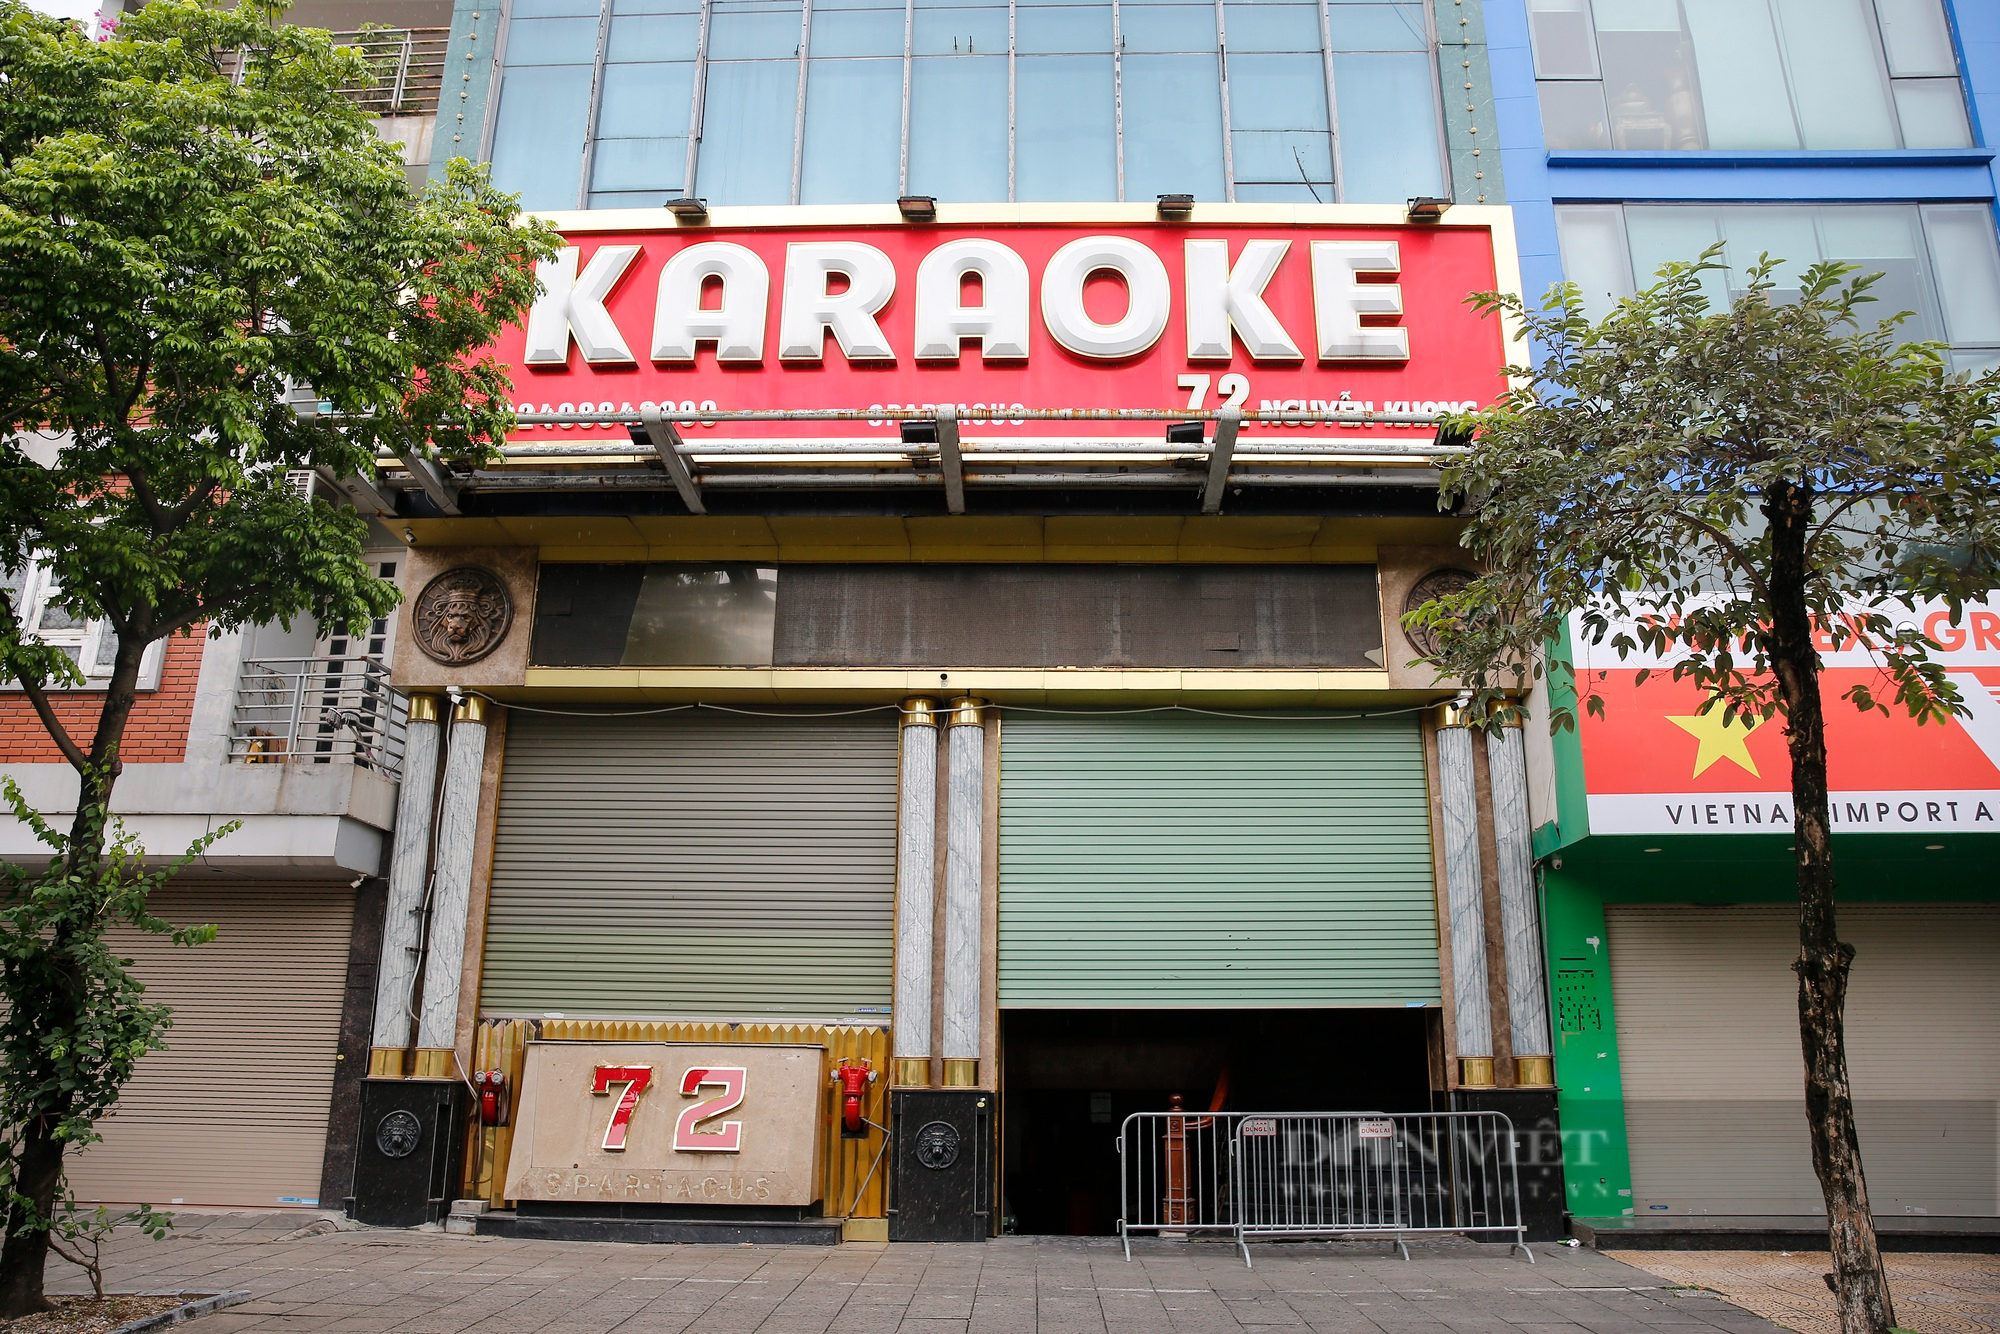 Karaoke vi phạm phòng cháy ở Hà Nội bị rào chắn, dán thông báo để ngăn hoạt động chui - Ảnh 2.